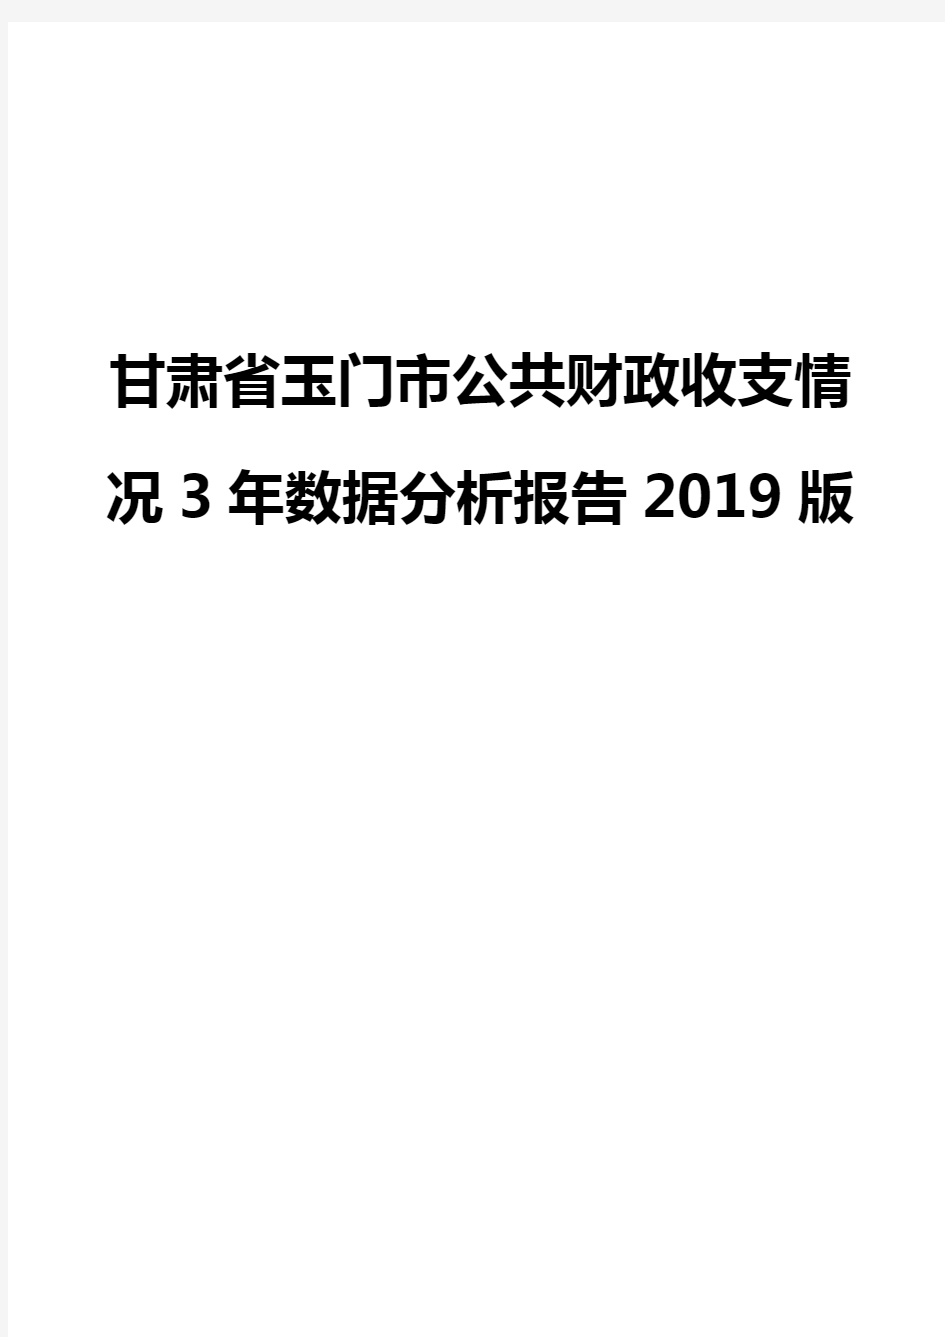 甘肃省玉门市公共财政收支情况3年数据分析报告2019版